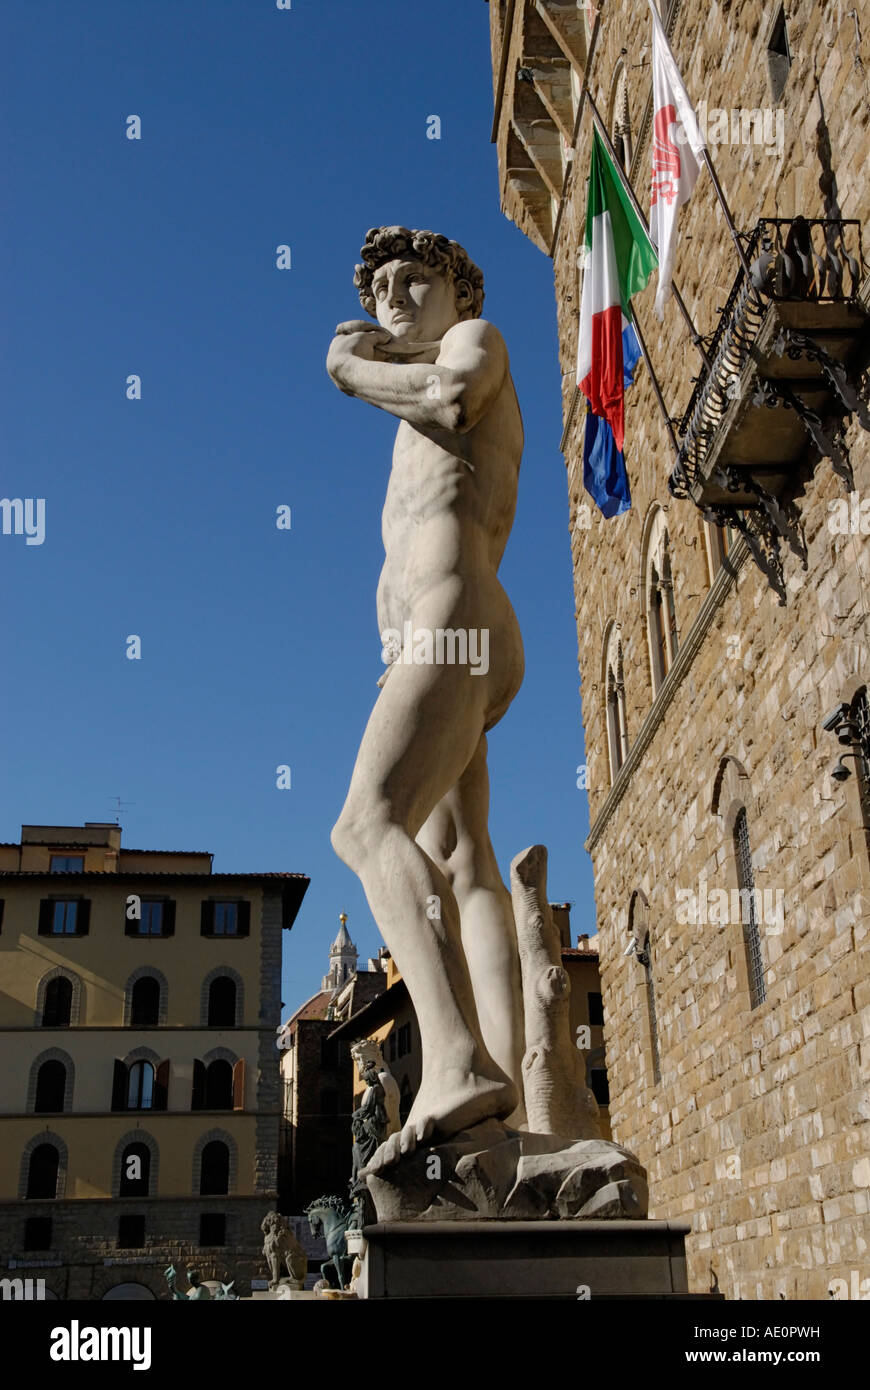 Copie du David de Michel-Ange statue en face du Palazzo Vecchio, Florence, Italie. Banque D'Images